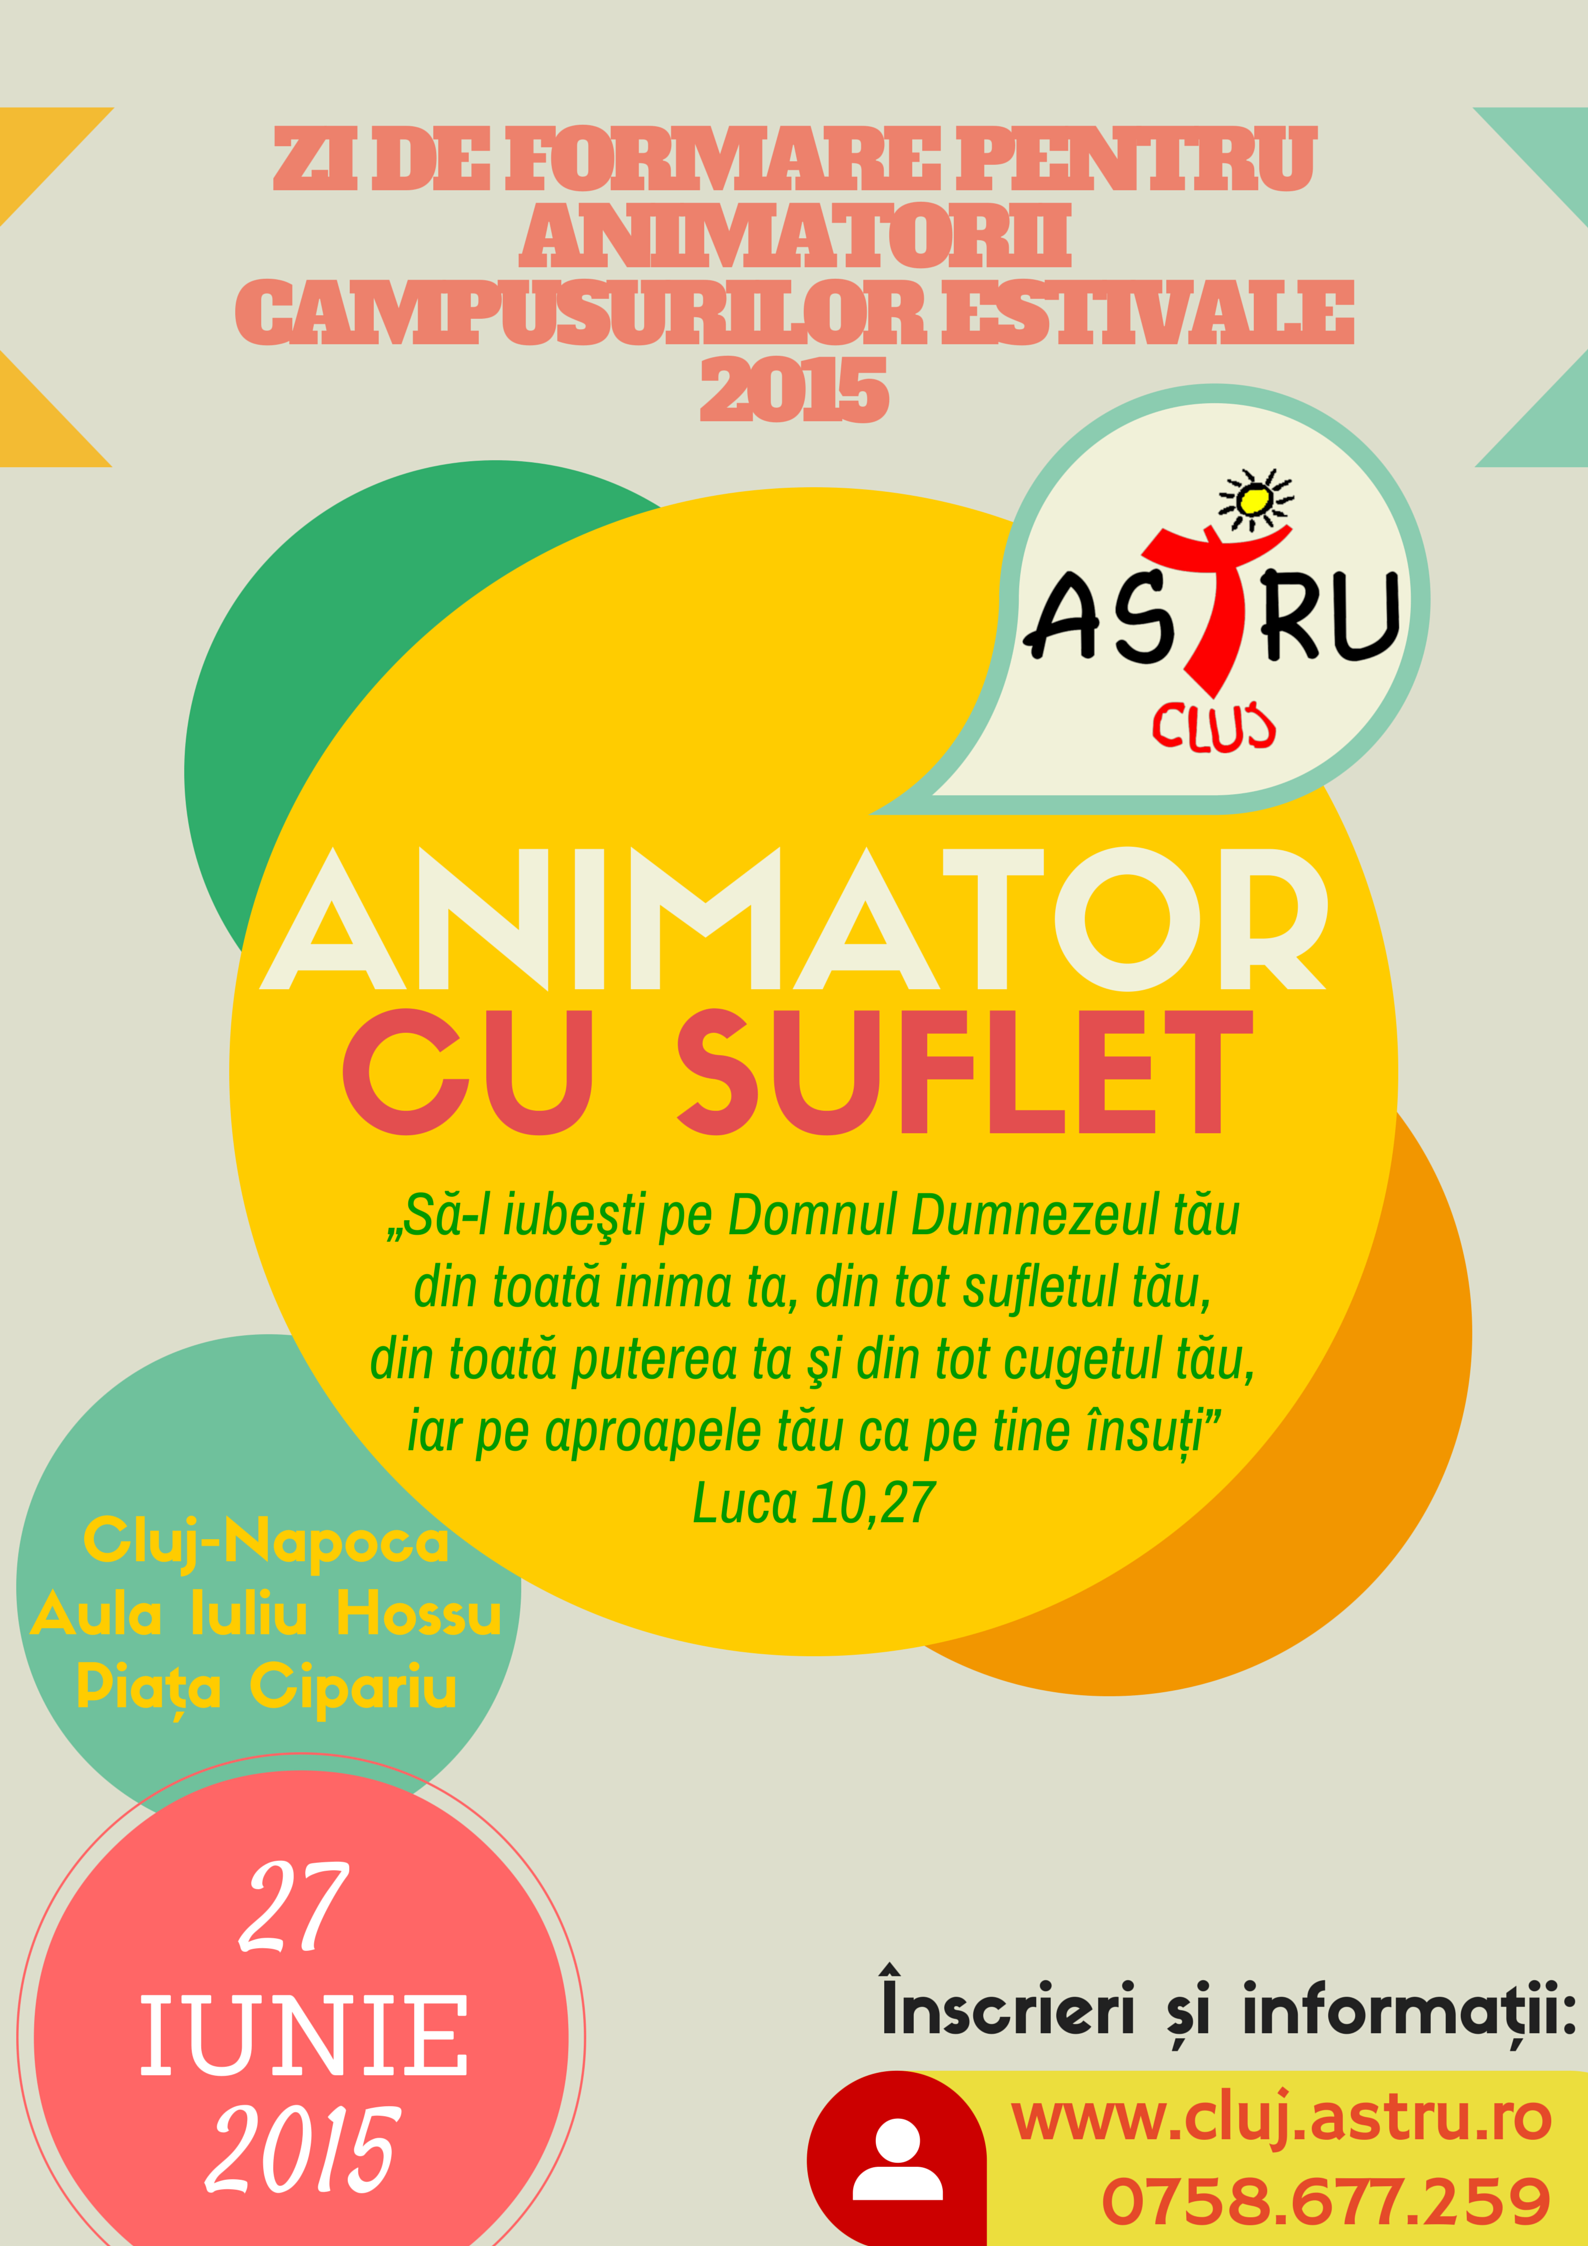 Afiș pentru ziua de formare a tinerilor animatori în vederea campusurilor estivale parohiale 2015